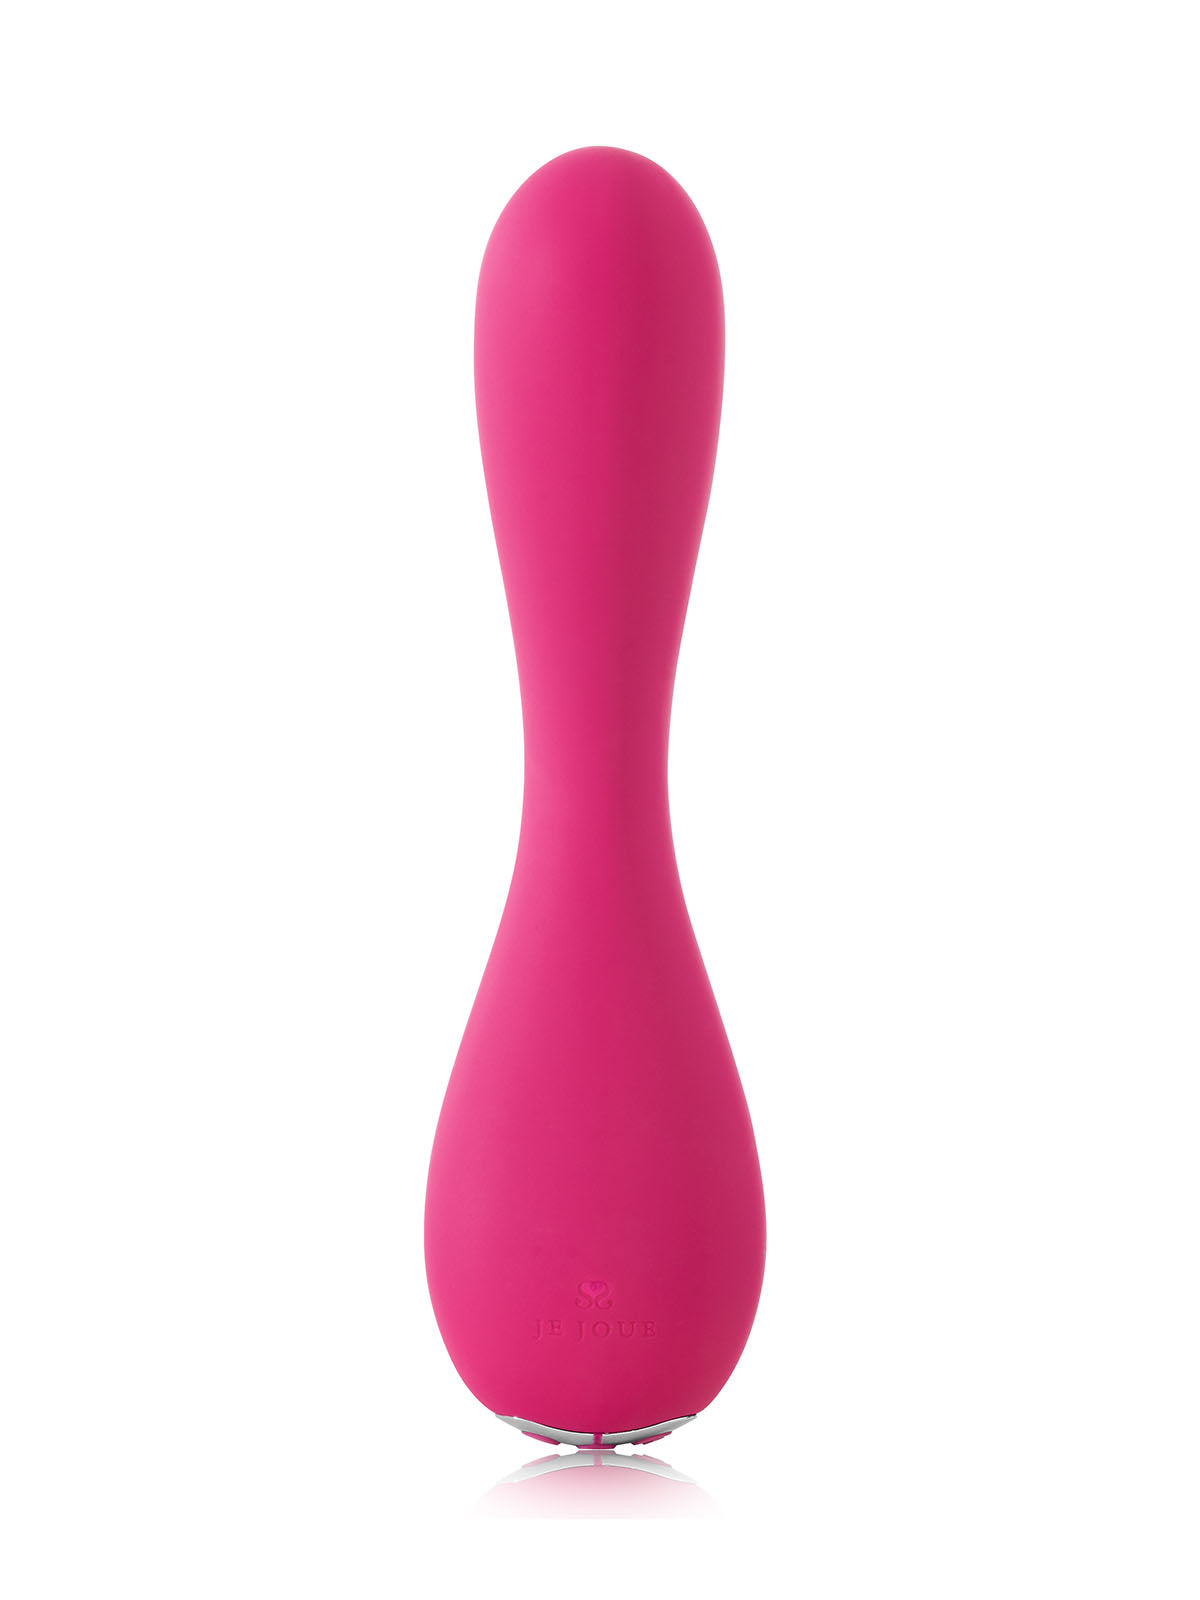  Pink Uma G-spot vibrator by Je Joue